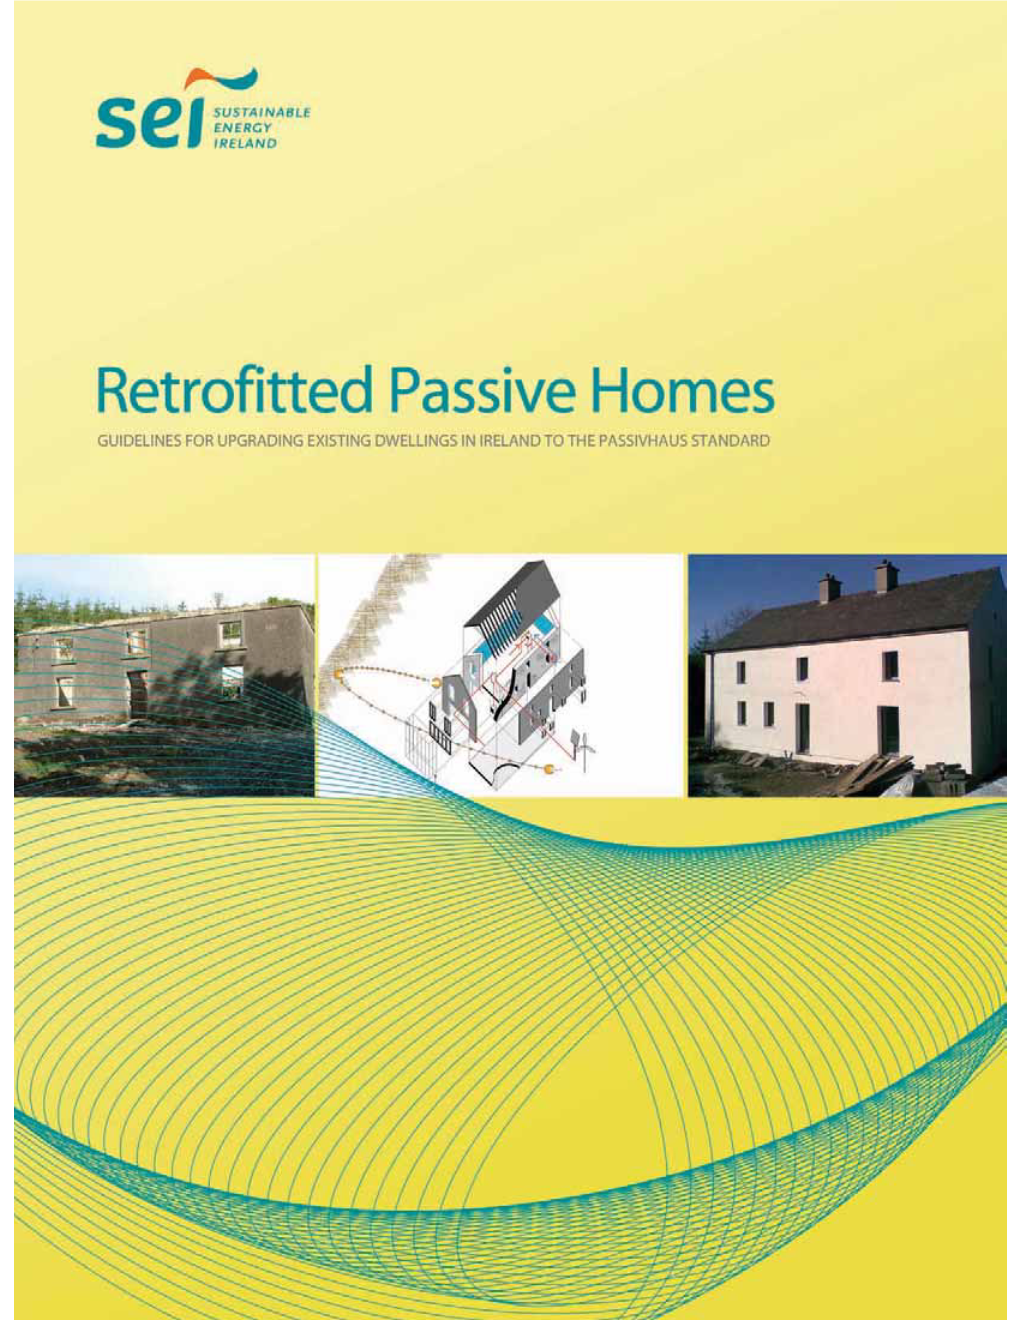 Download Passive House Retrofit Guidelines